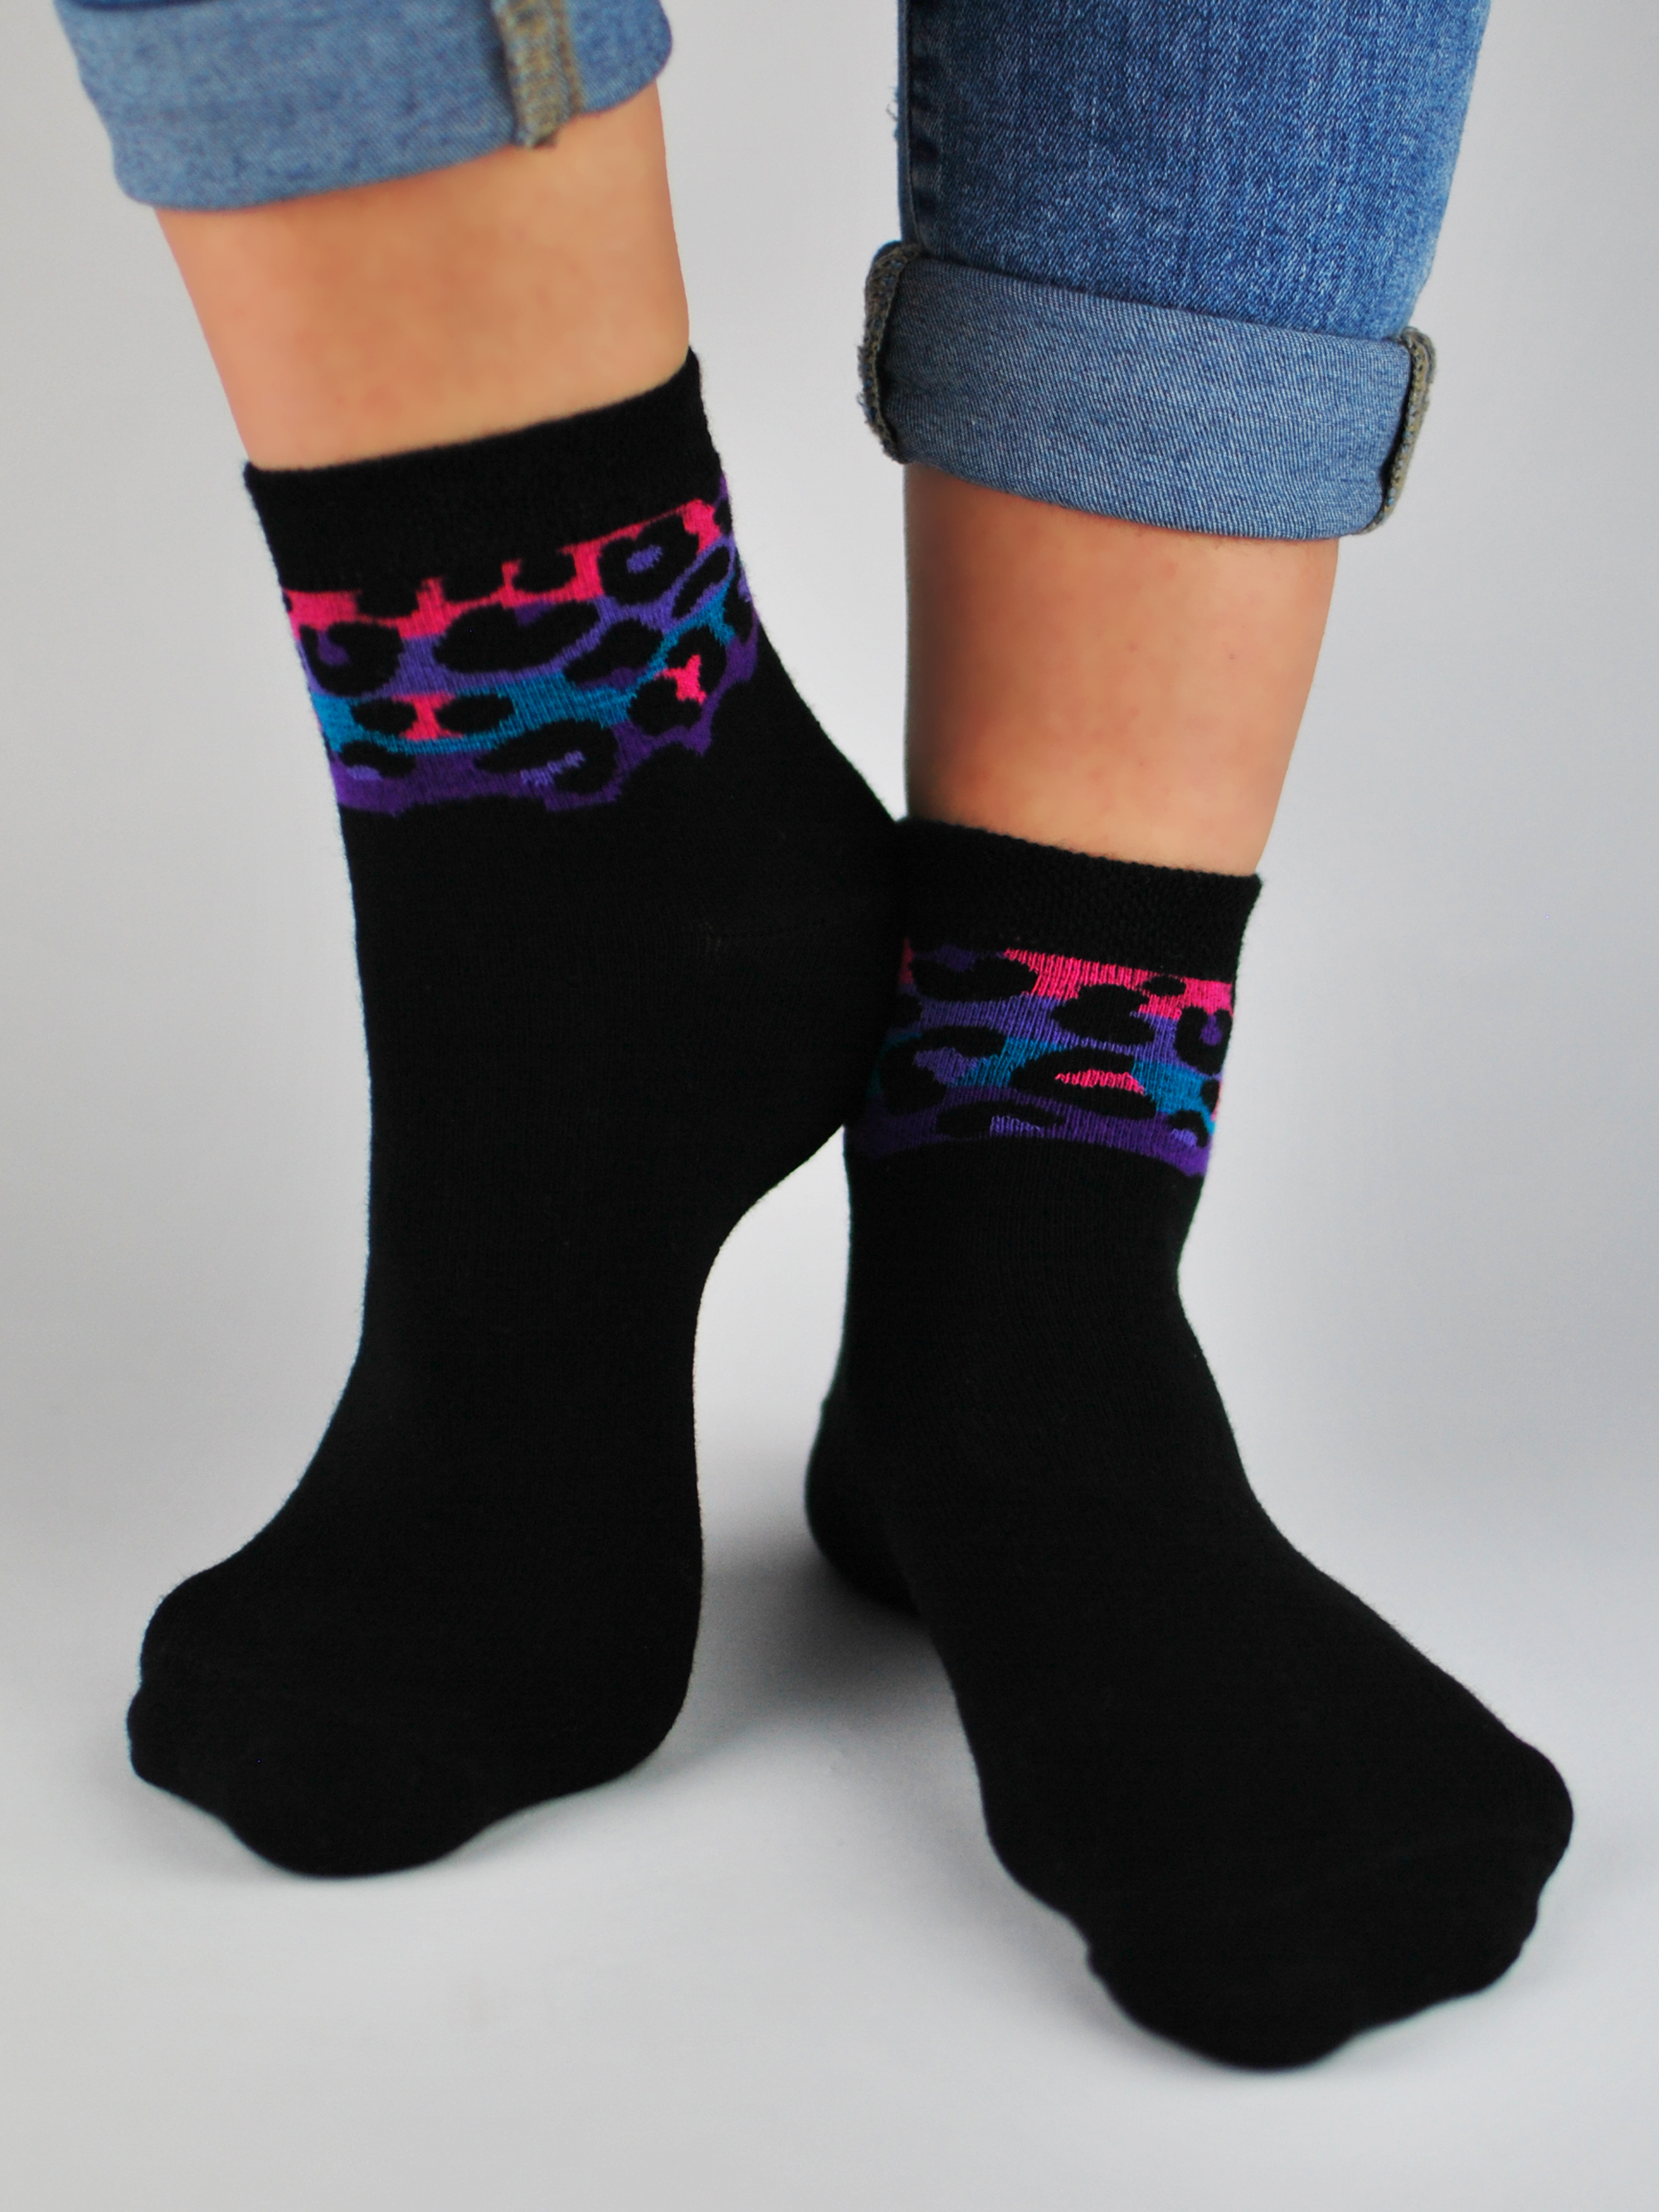 NOVITI Woman's Socks SB023-W-01